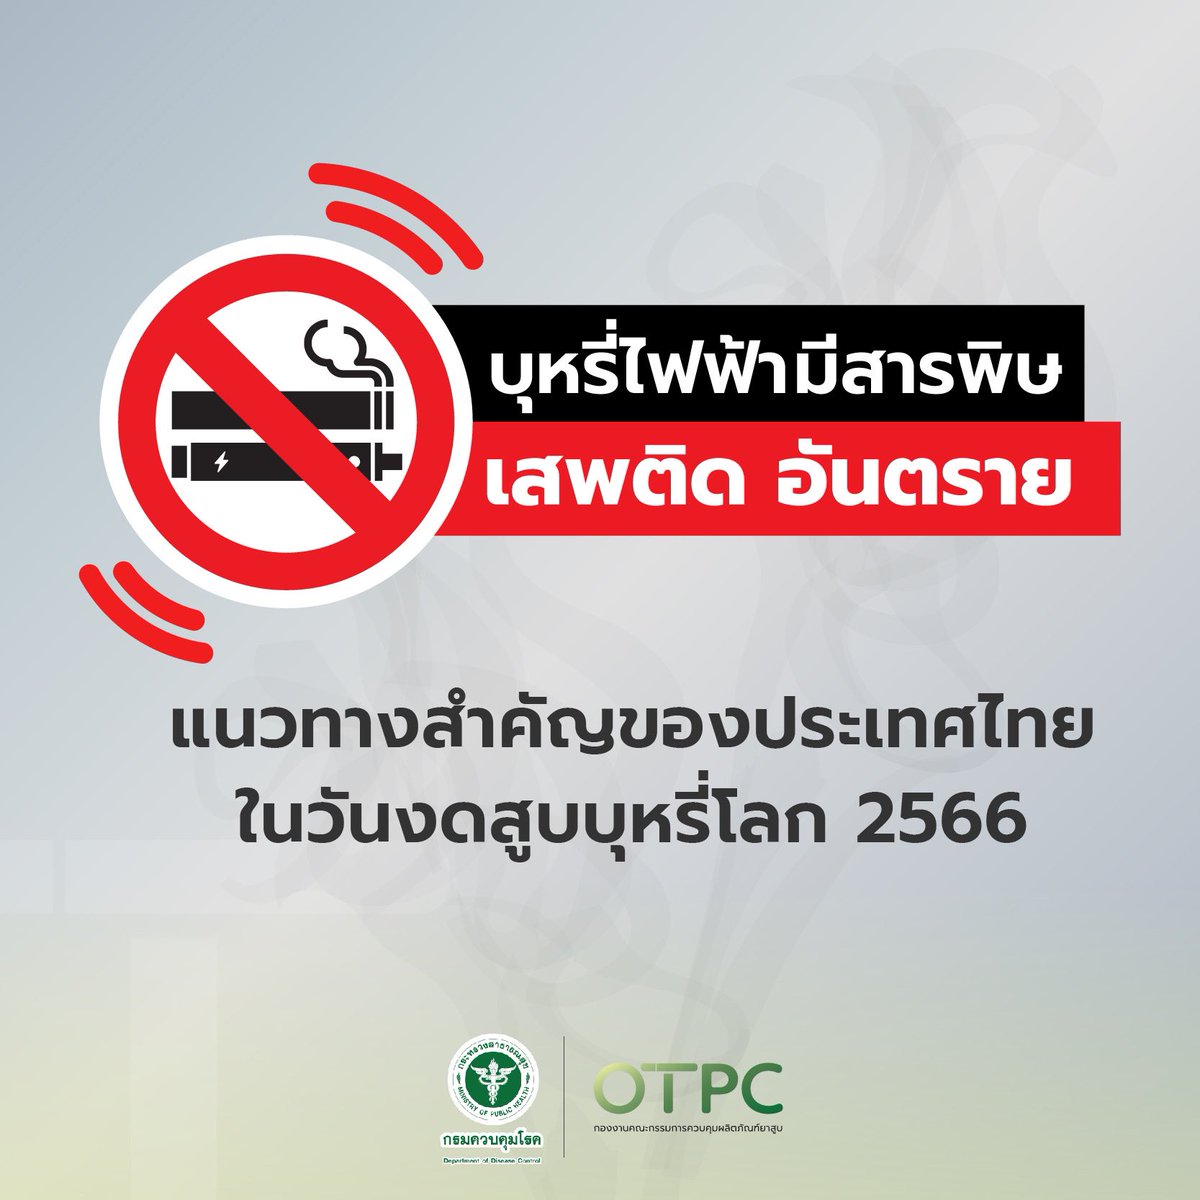 “บุหรี่ไฟฟ้ามีสารพิษ เสพติด อันตราย” แนวของประเทศไทยในวันงดสูบบุหรี่โลก 2566 ที่ตั้งใจส่งเสริมให้ประชาชนตระหนักถึงพิษ ภัย โทษที่เกิดจากการสูบบุหรี่ และบุหรี่ไฟฟ้า เพื่อให้เกิดการลด ละ เลิกบุหรี่  อันได้ส่งผลเสียในทุกๆด้านของชีวิต #OTPC #ร่วมสร้างสังคมปลอดบุหรี่